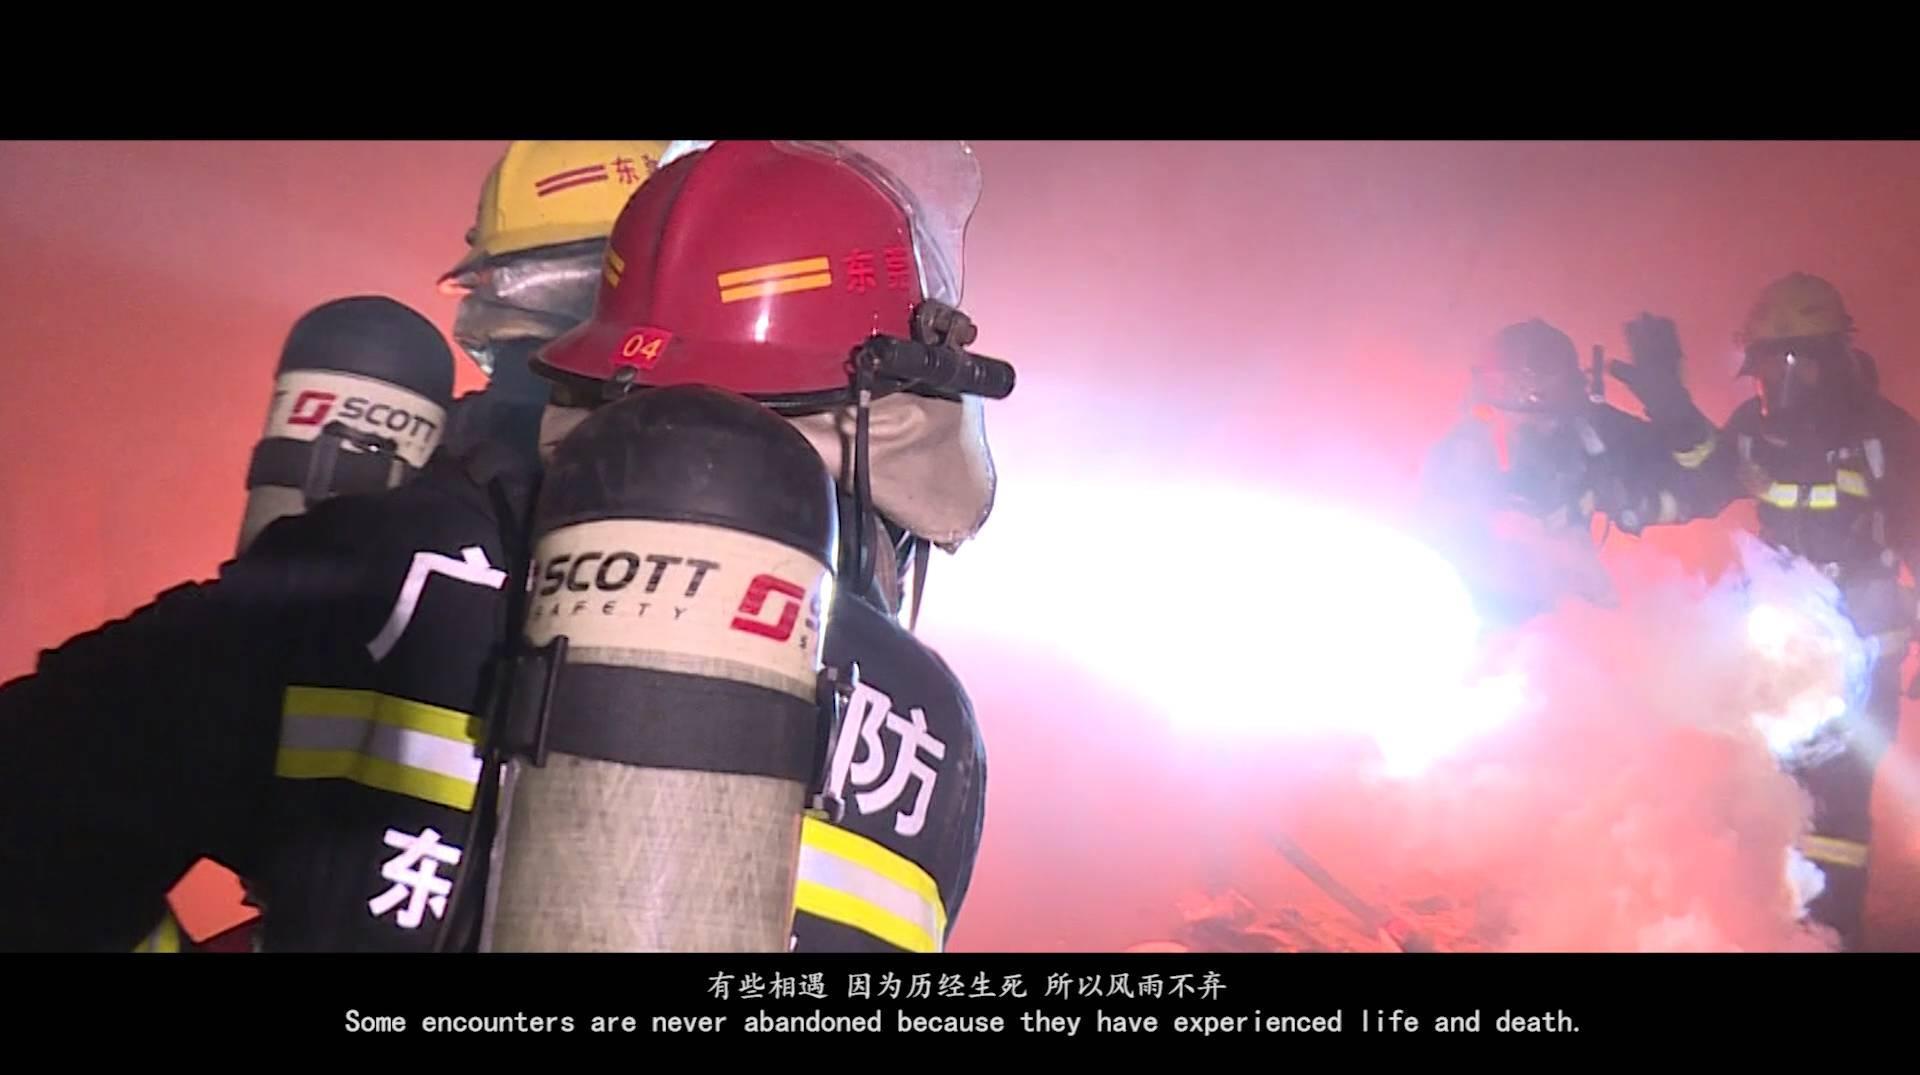 东莞市公安消防局虎门大队形象宣传片《和你在一起》